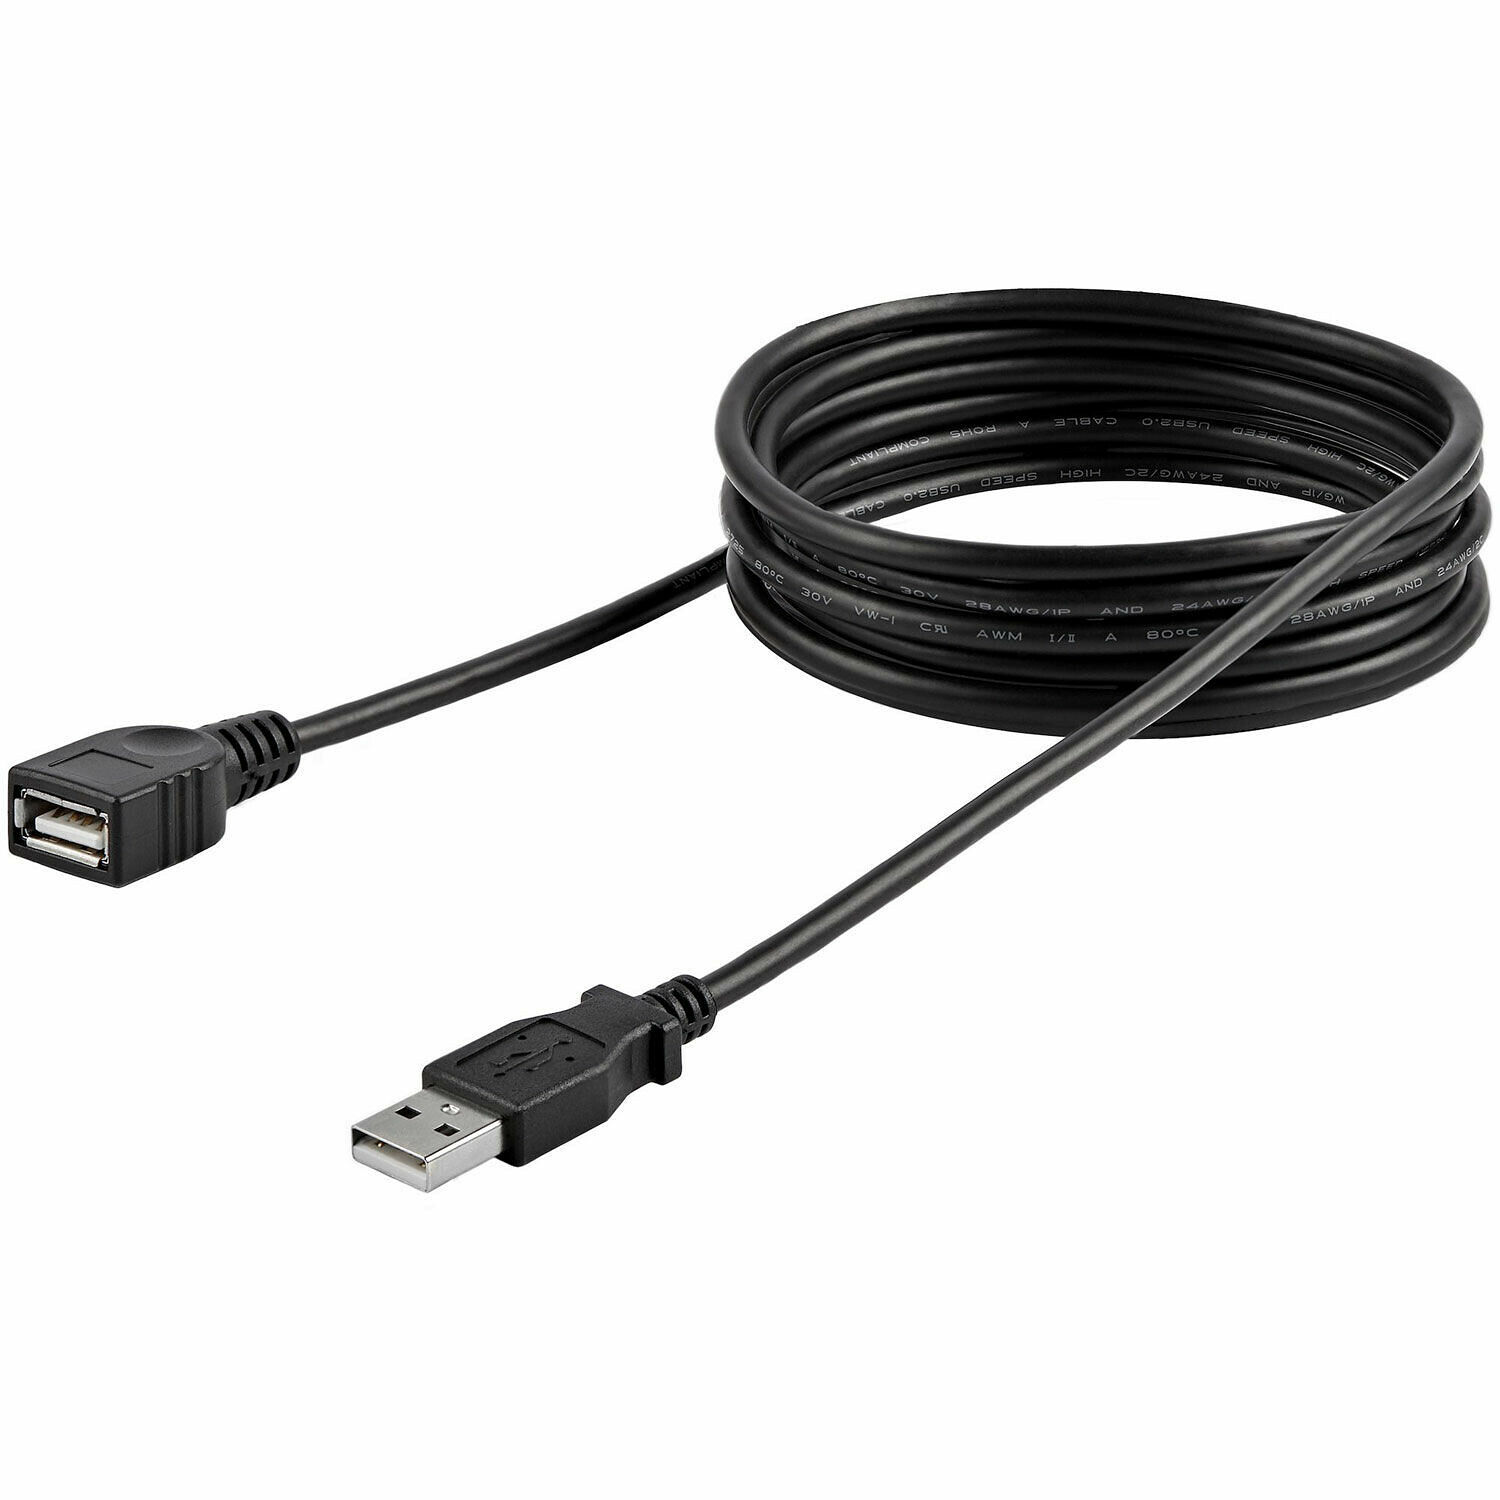 Rallonge USB 2.0 A 1m pour connecter votre convertisseur FTDI sur table